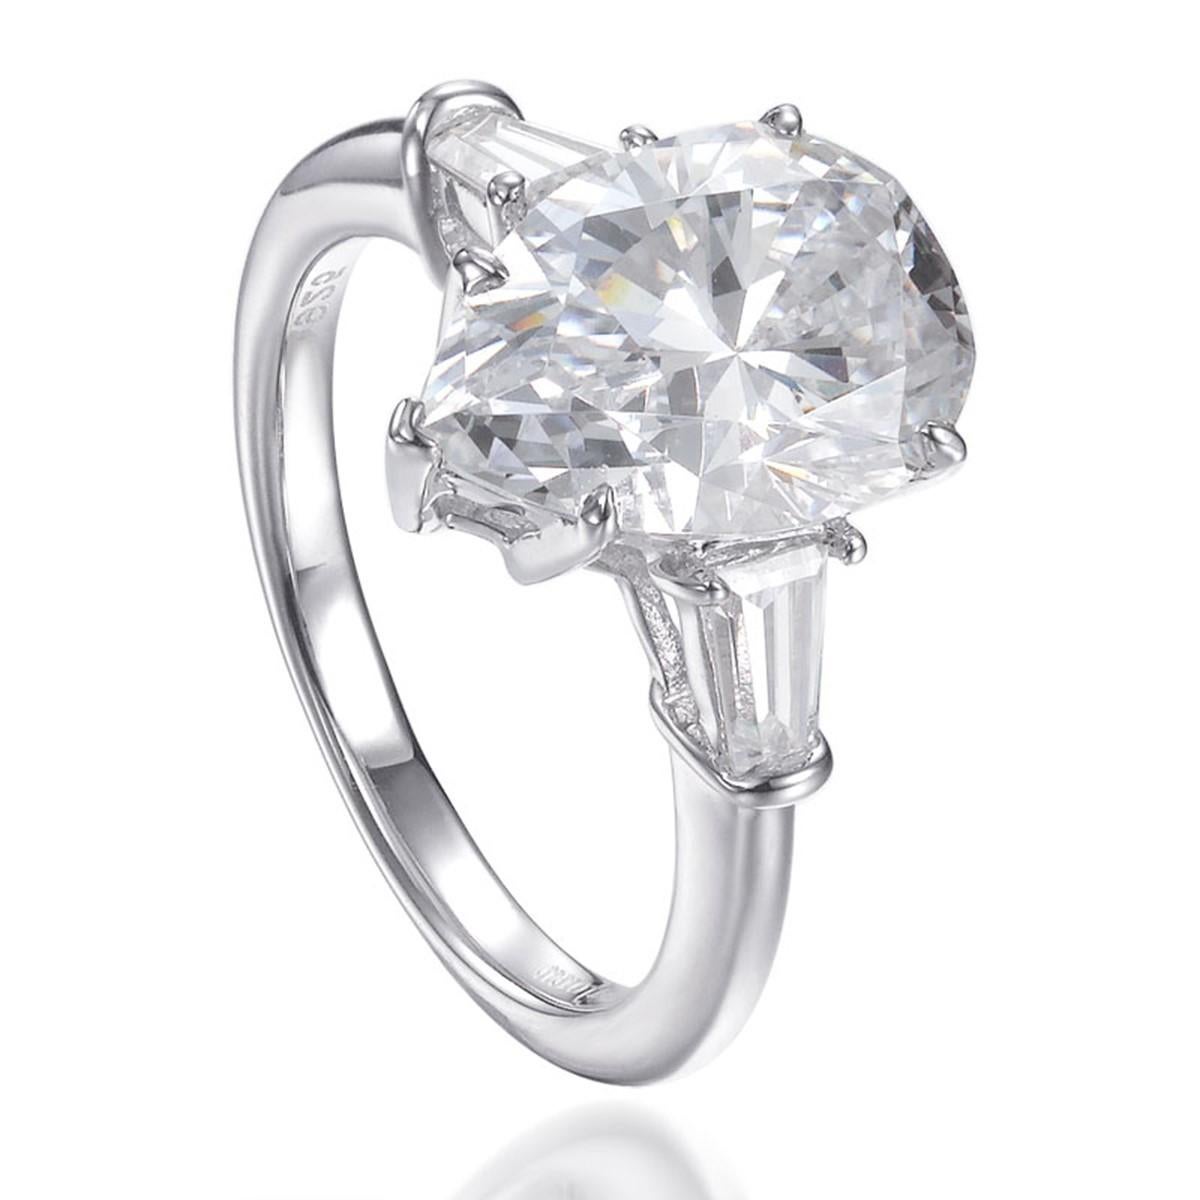 D'une qualité exceptionnelle, cette bague de fiançailles classique présente un grand diamant central en forme de poire de 5,05 carats simulant un diamant central en forme de poire, flanqué de deux zirconia cubiques effilées en taille baguette